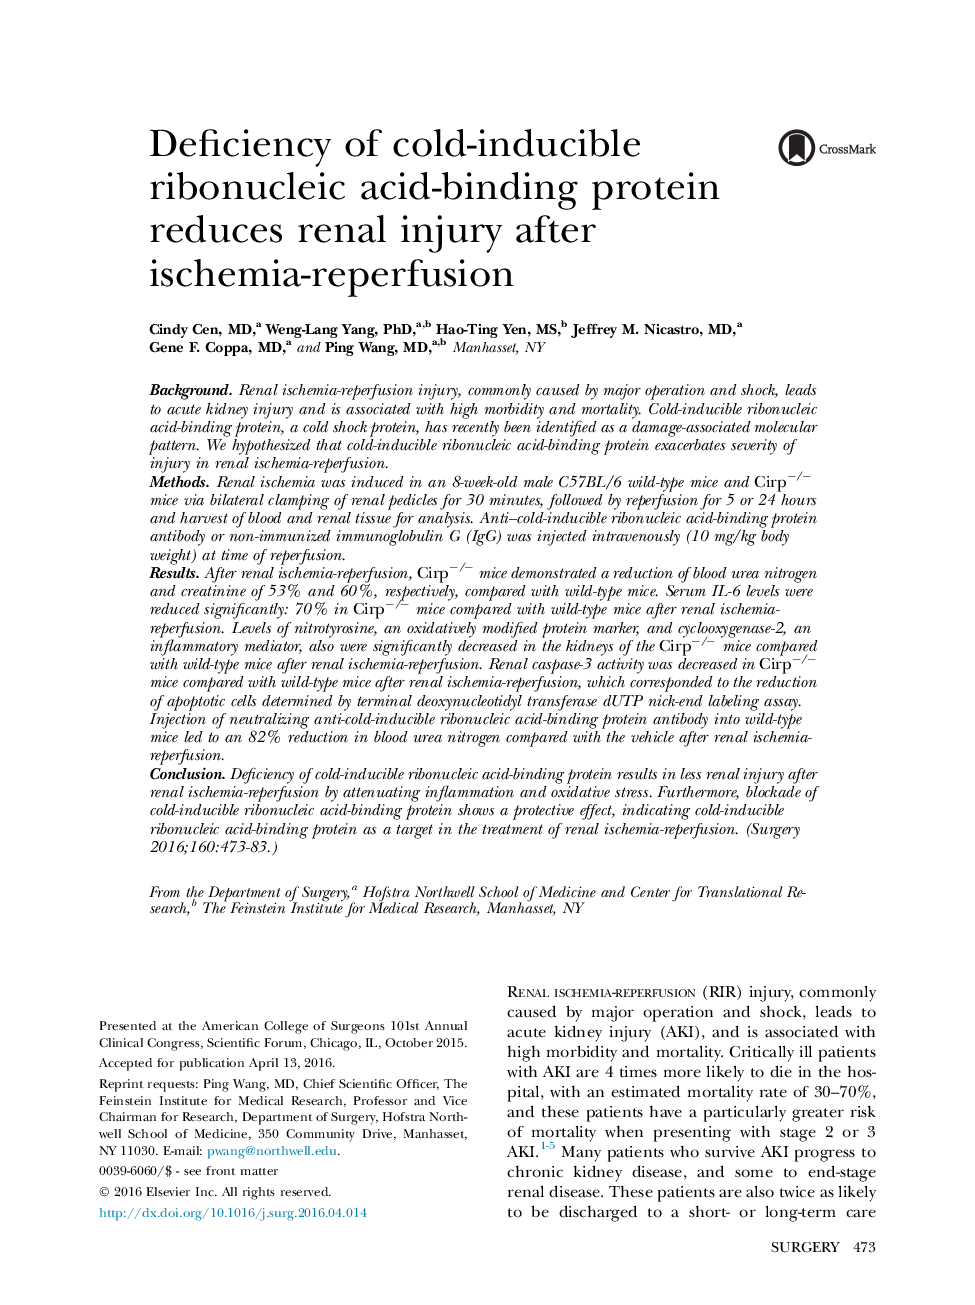 ضایعات تروما / بحران کمبود پروتئین اتصال دهنده ریبونوکلئیک اسید با القای سرب باعث کاهش آسیب کلیه پس از ایسکمی-رپرفیوژن 